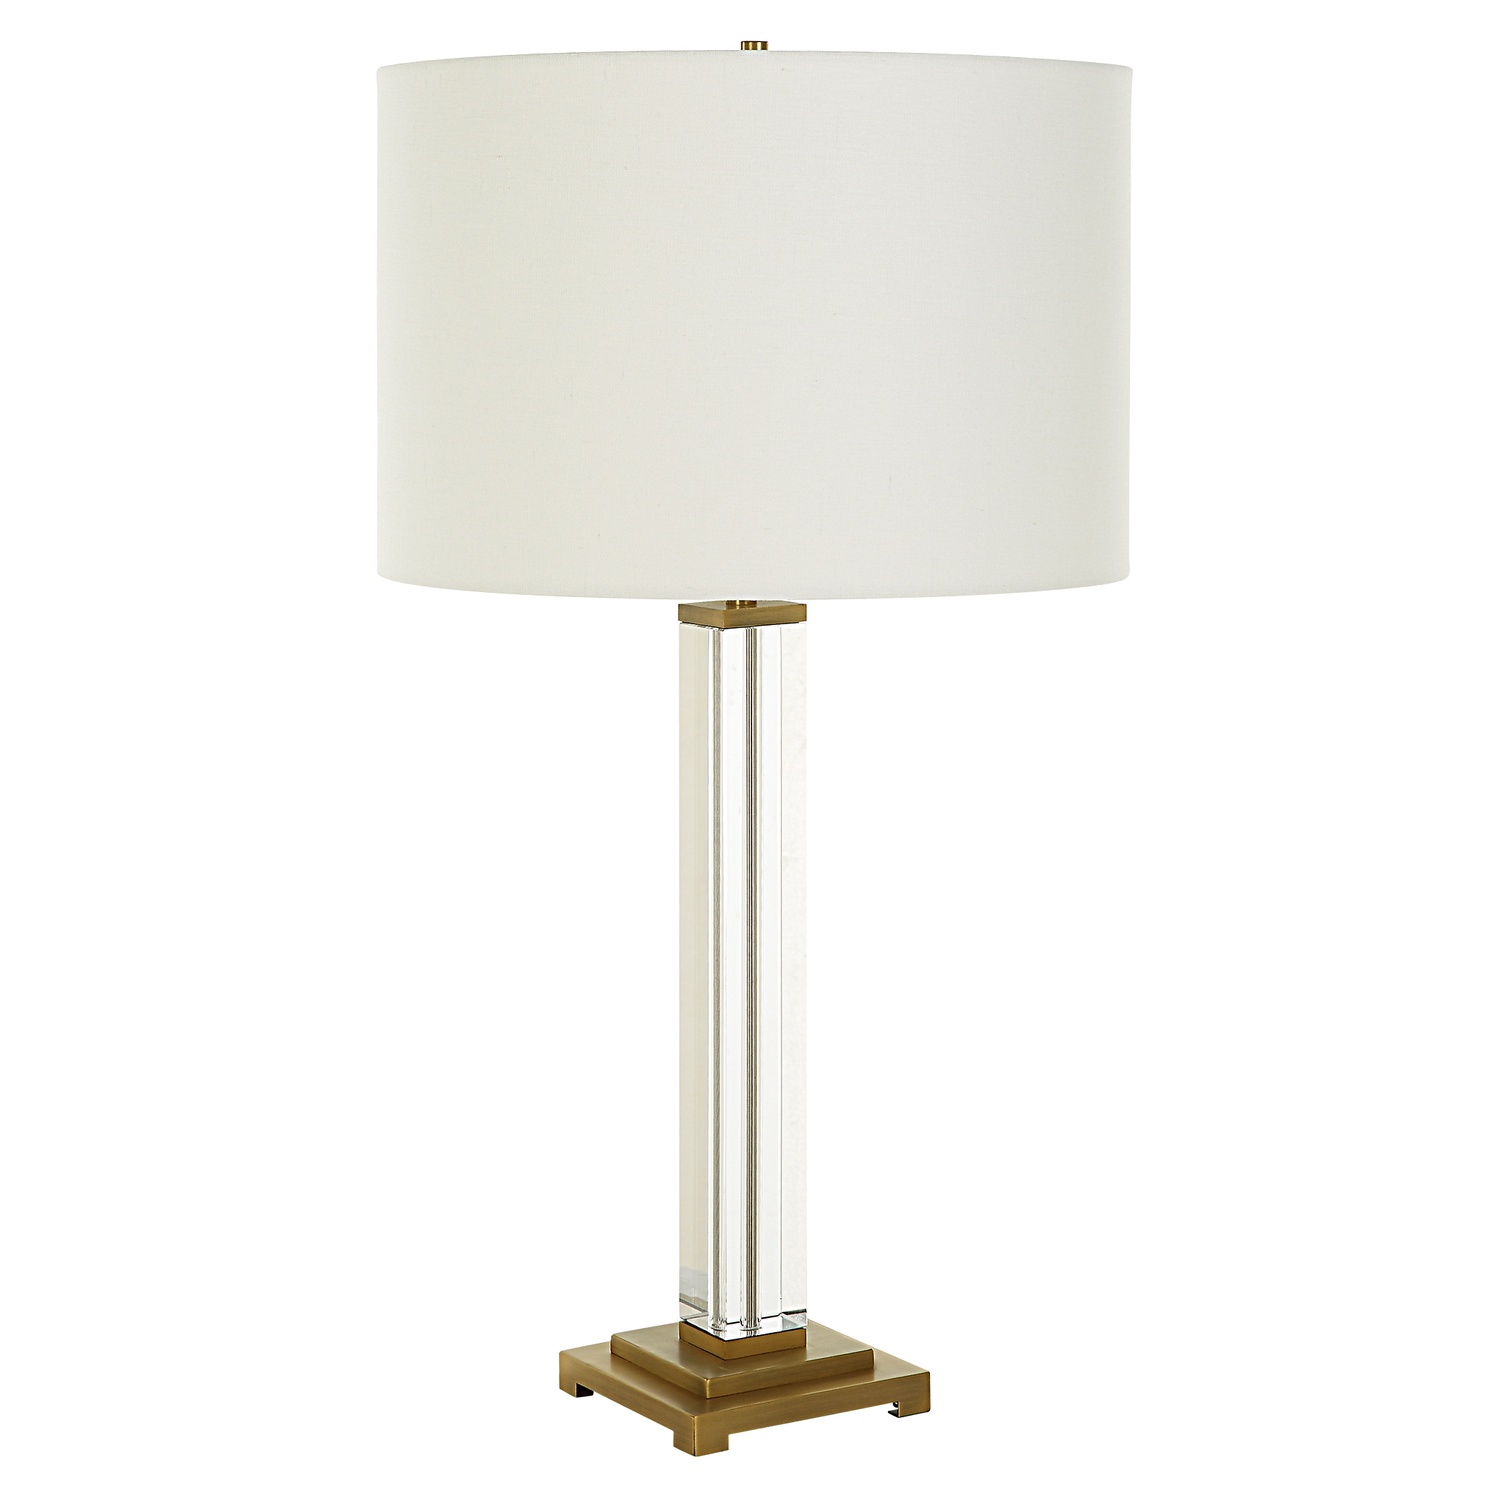 Crystal Column-Crystal Column Table Lamp